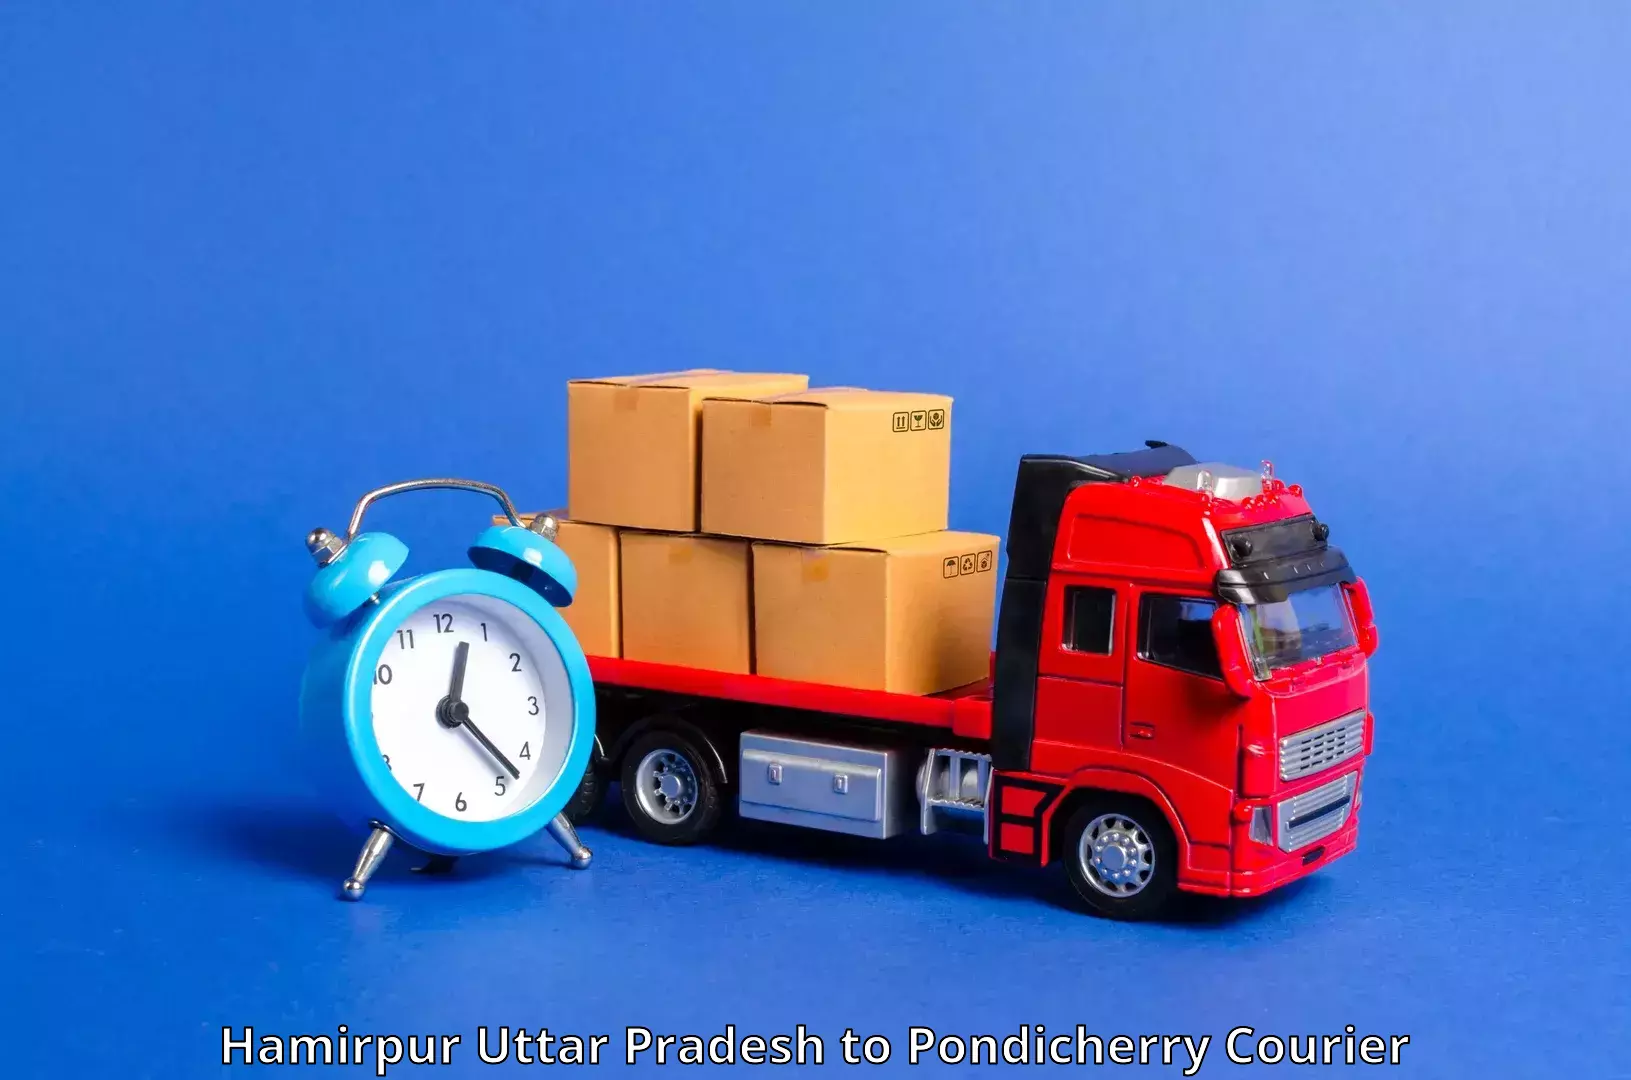 Flexible parcel services Hamirpur Uttar Pradesh to NIT Puducherry